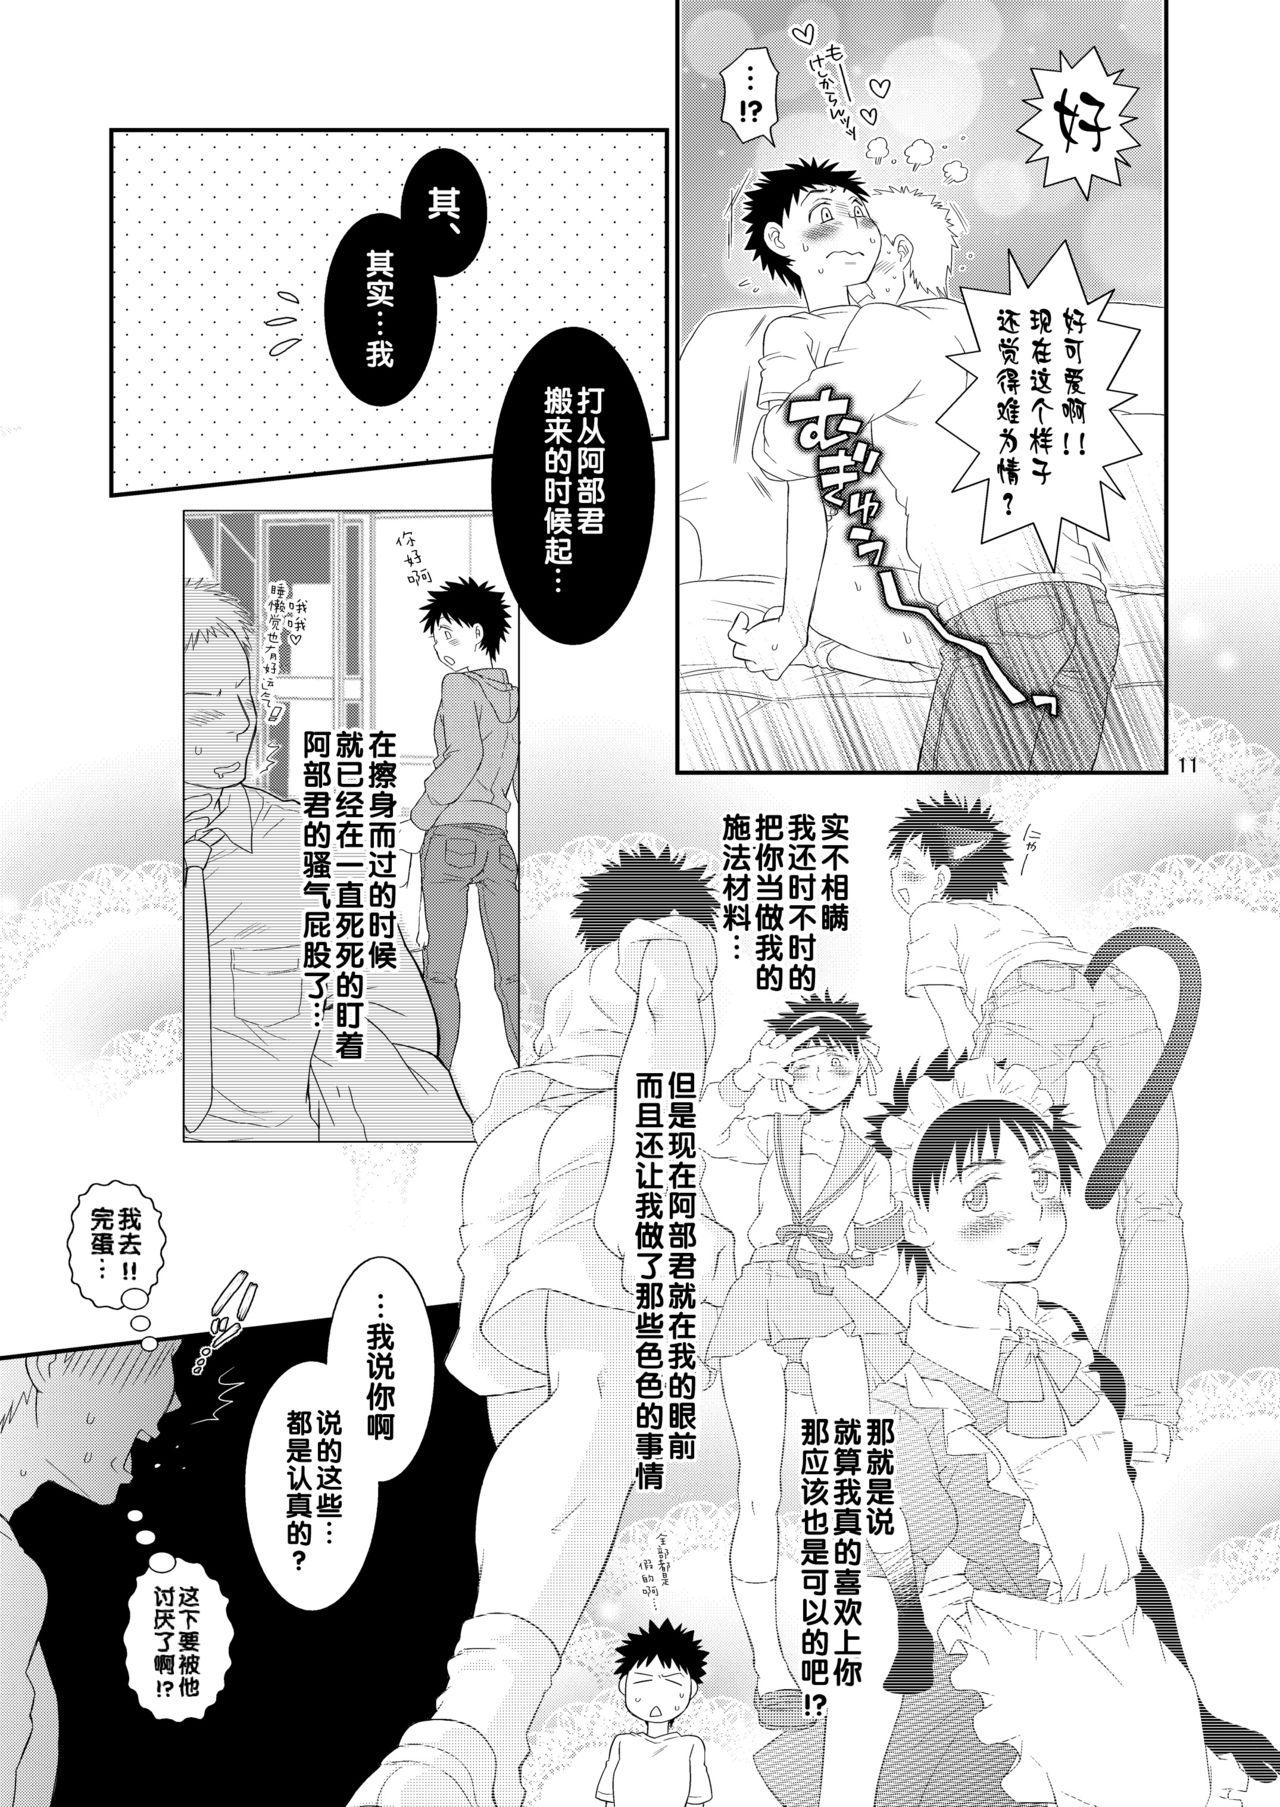 Gag Super Freak Takaya-kun! - Ookiku furikabutte | big windup Masseur - Page 11